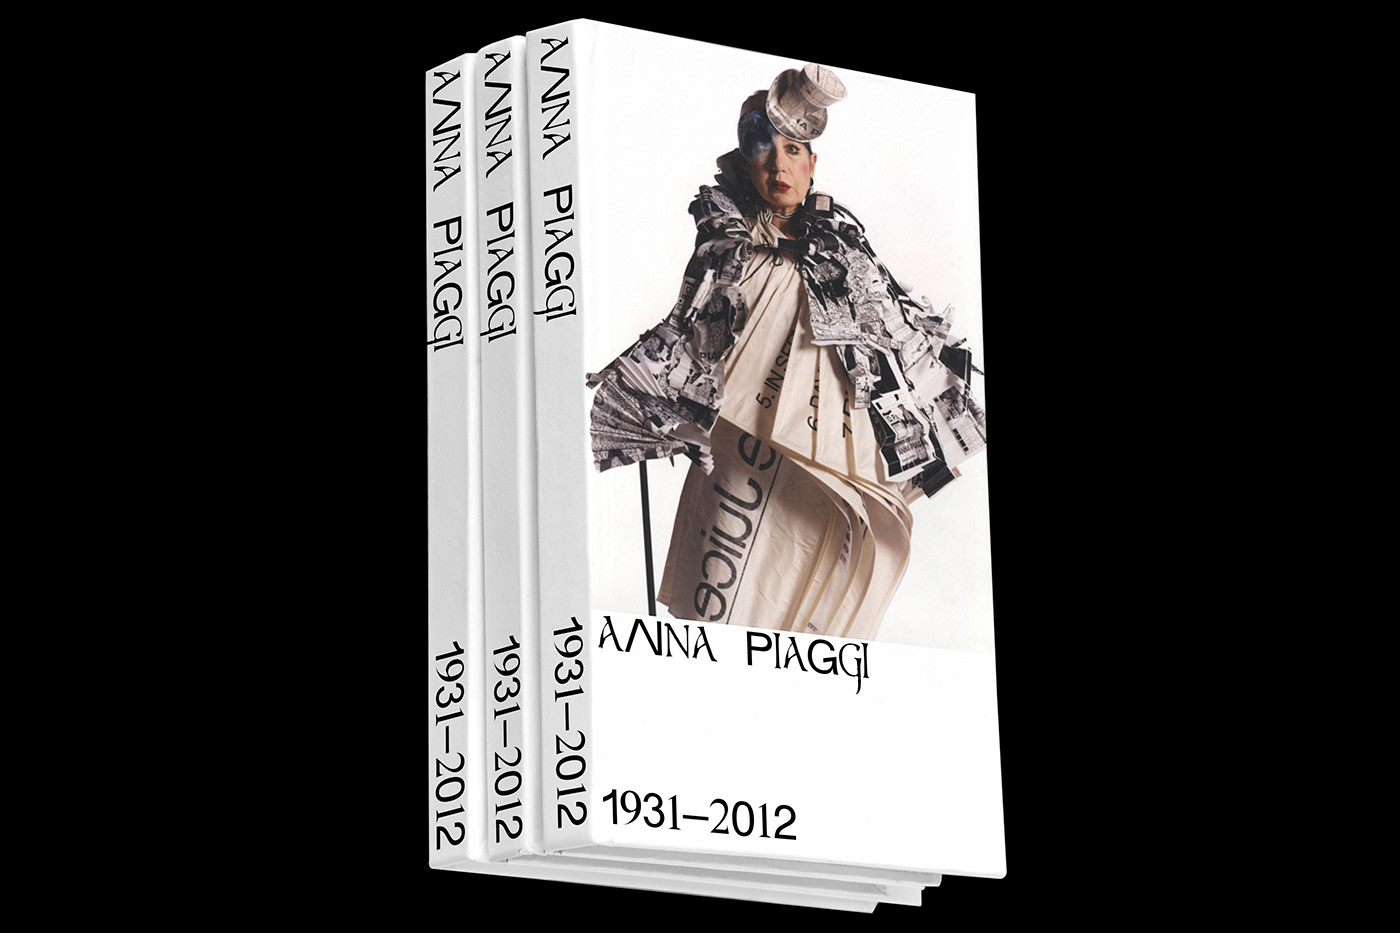 anna piaggi book book design design editorial Fashion  Italy milan milano moda